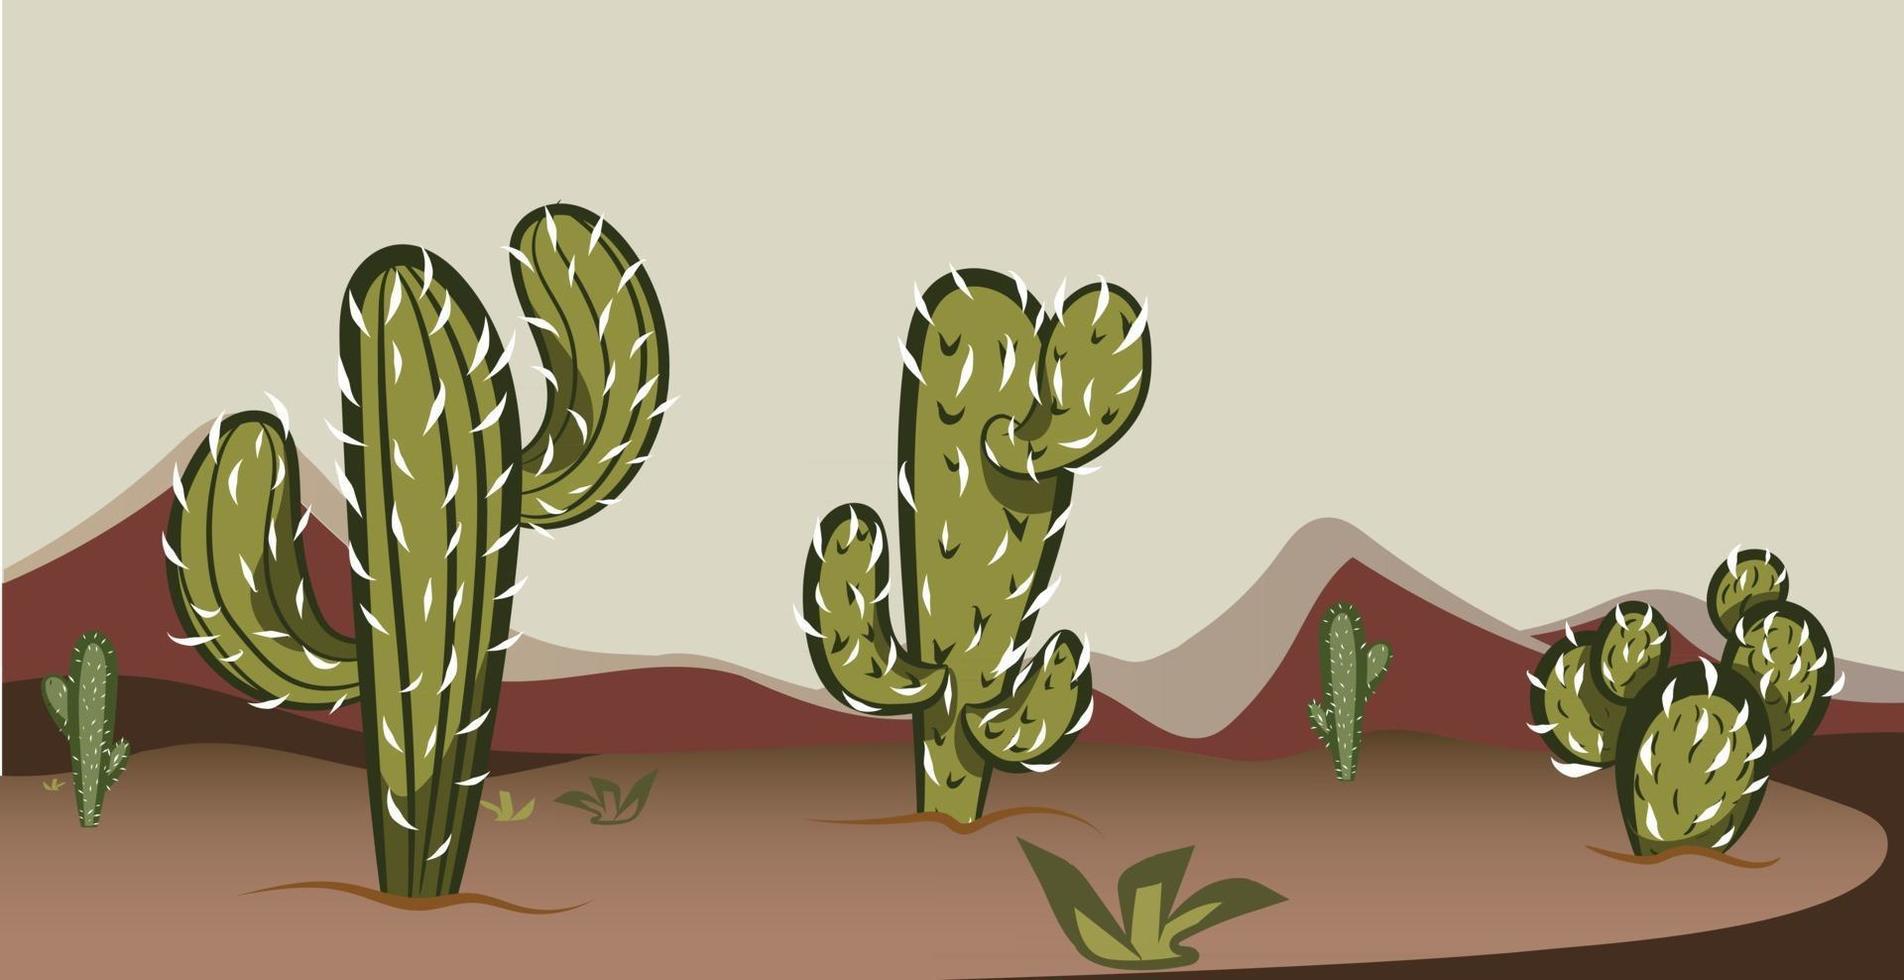 escena del desierto del salvaje oeste de texas con cactus vector